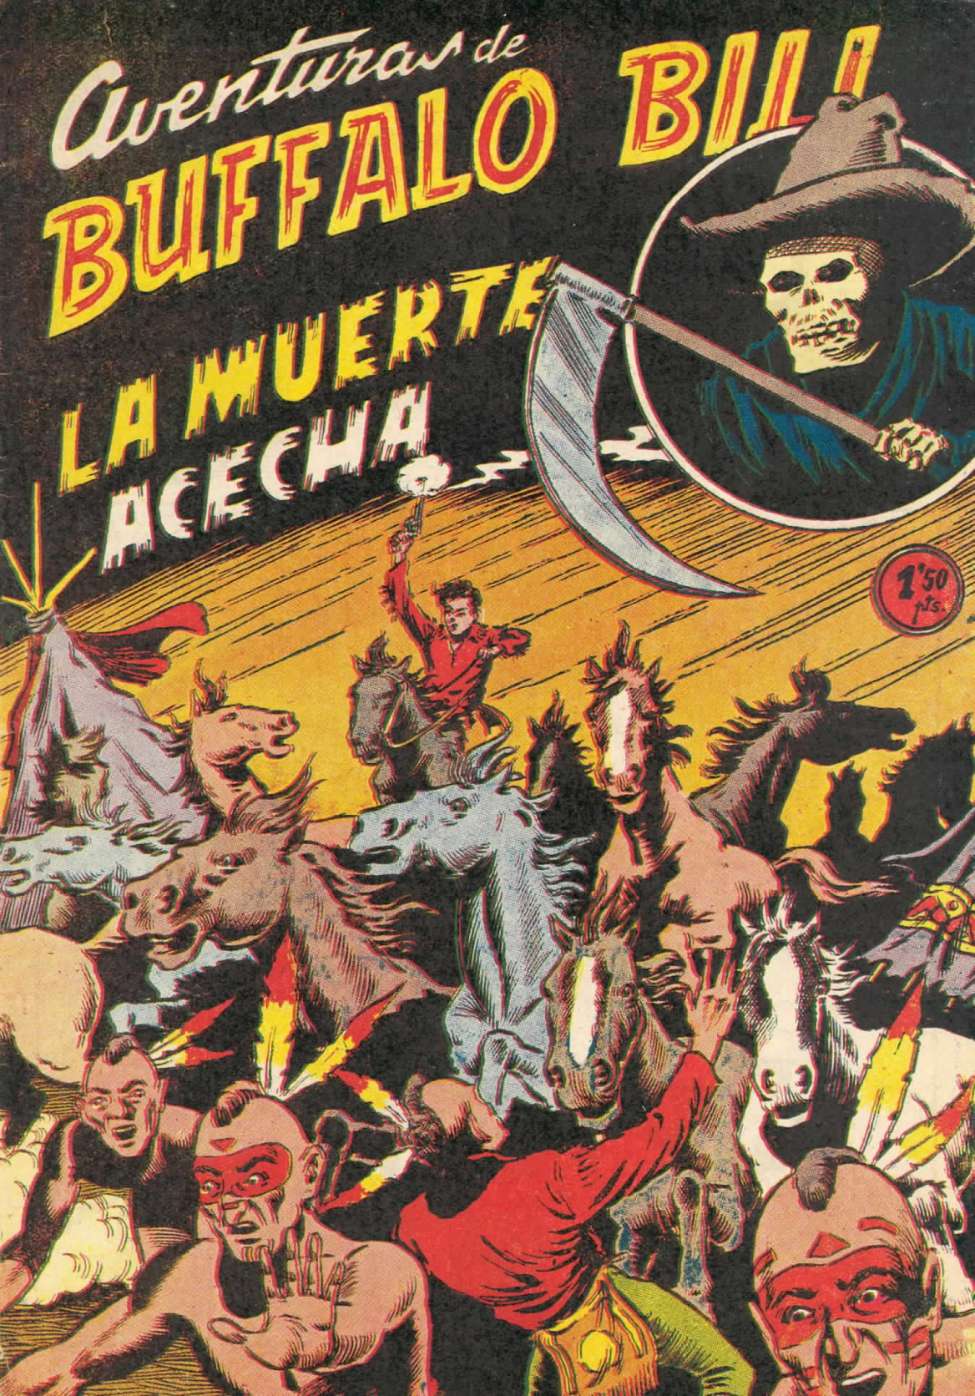 Comic Book Cover For Aventuras de Buffalo Bill 8 La muerte acecha